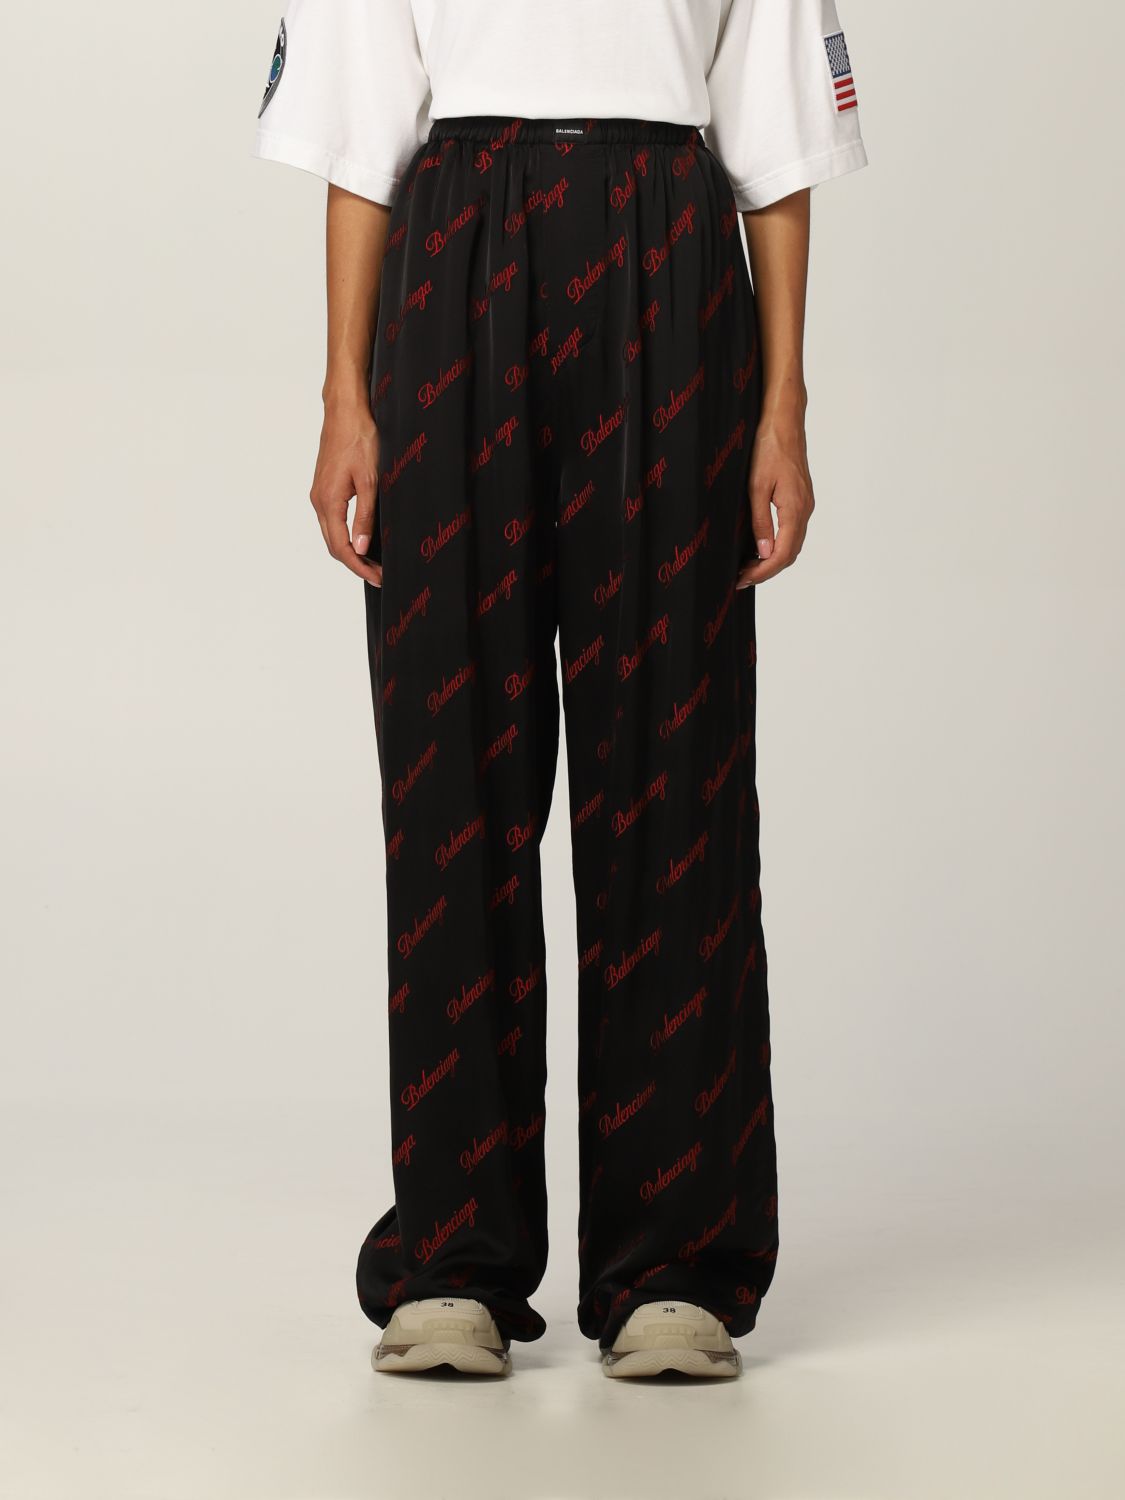 BALENCIAGA: Pajama trousers in viscose - Black Balenciaga 659026 TKO52 online on GIGLIO.COM